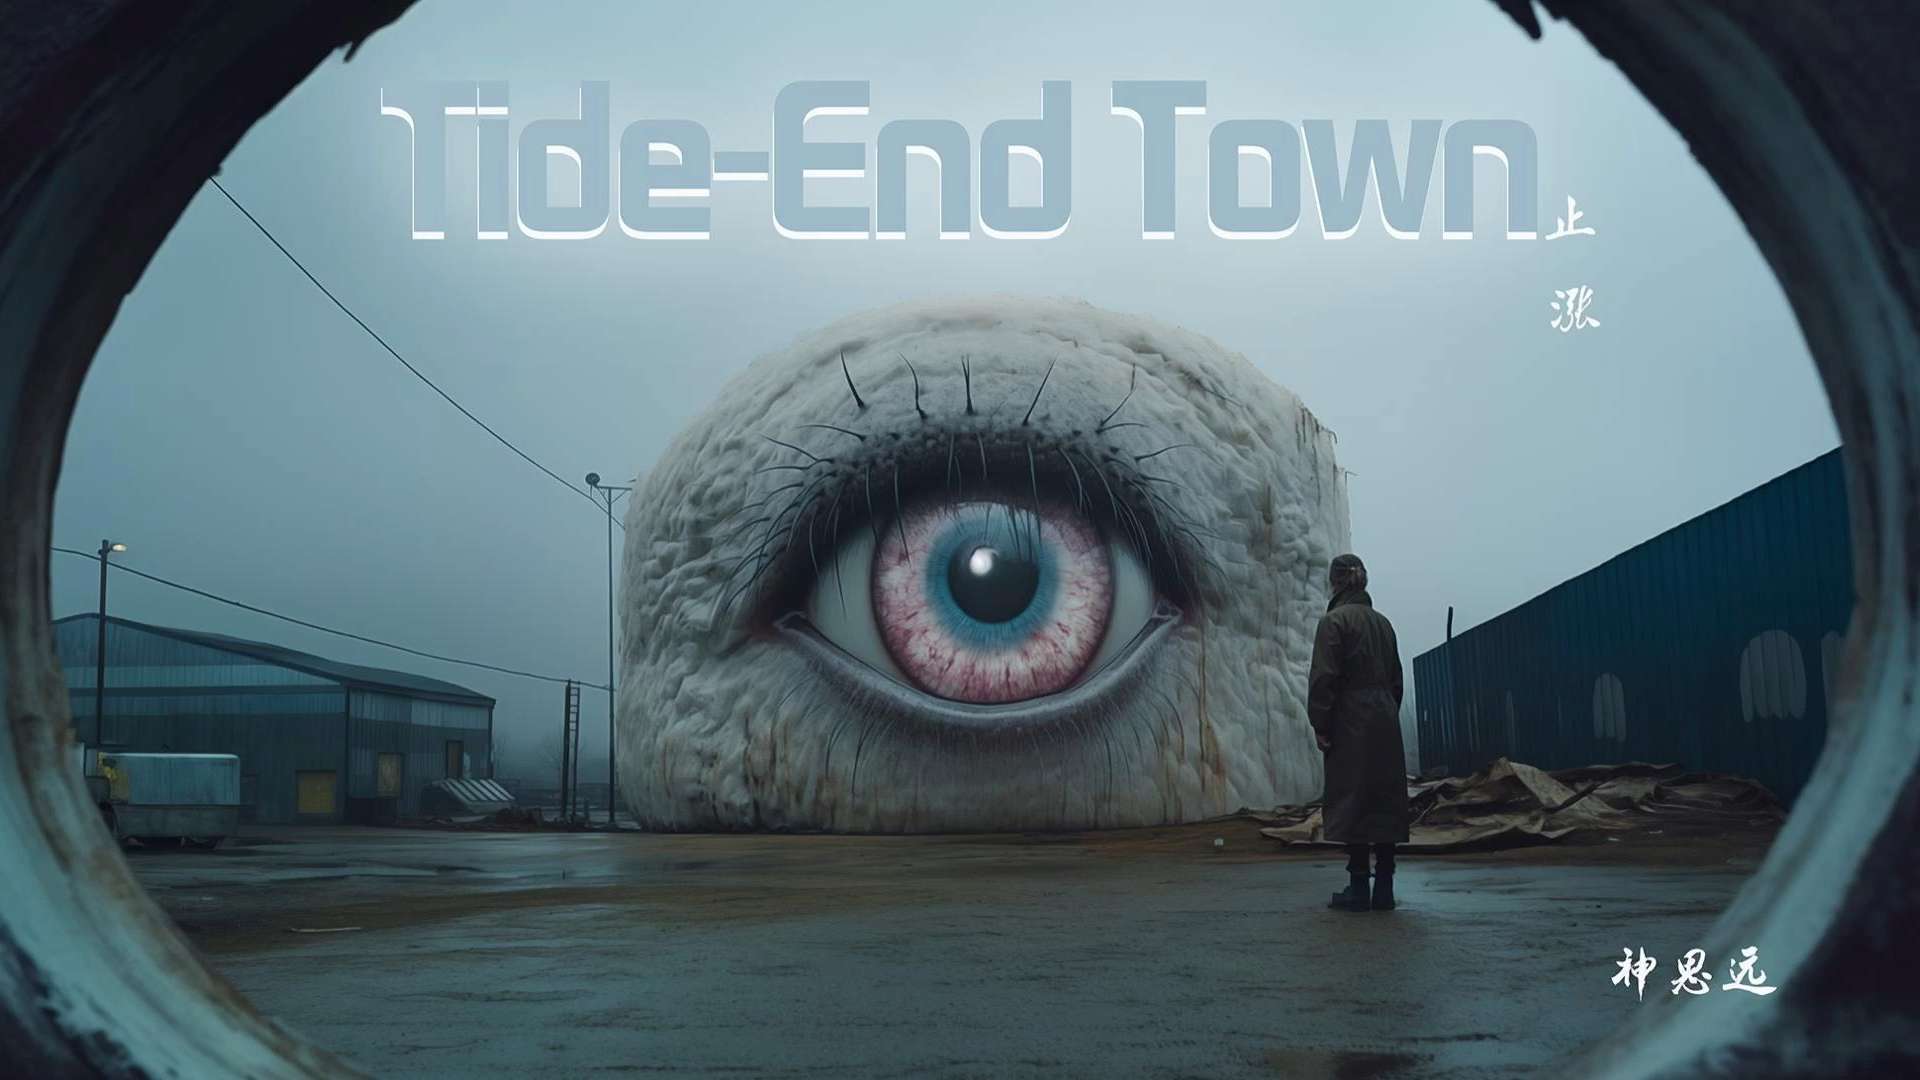 Tide-end town 止涨 (ai）